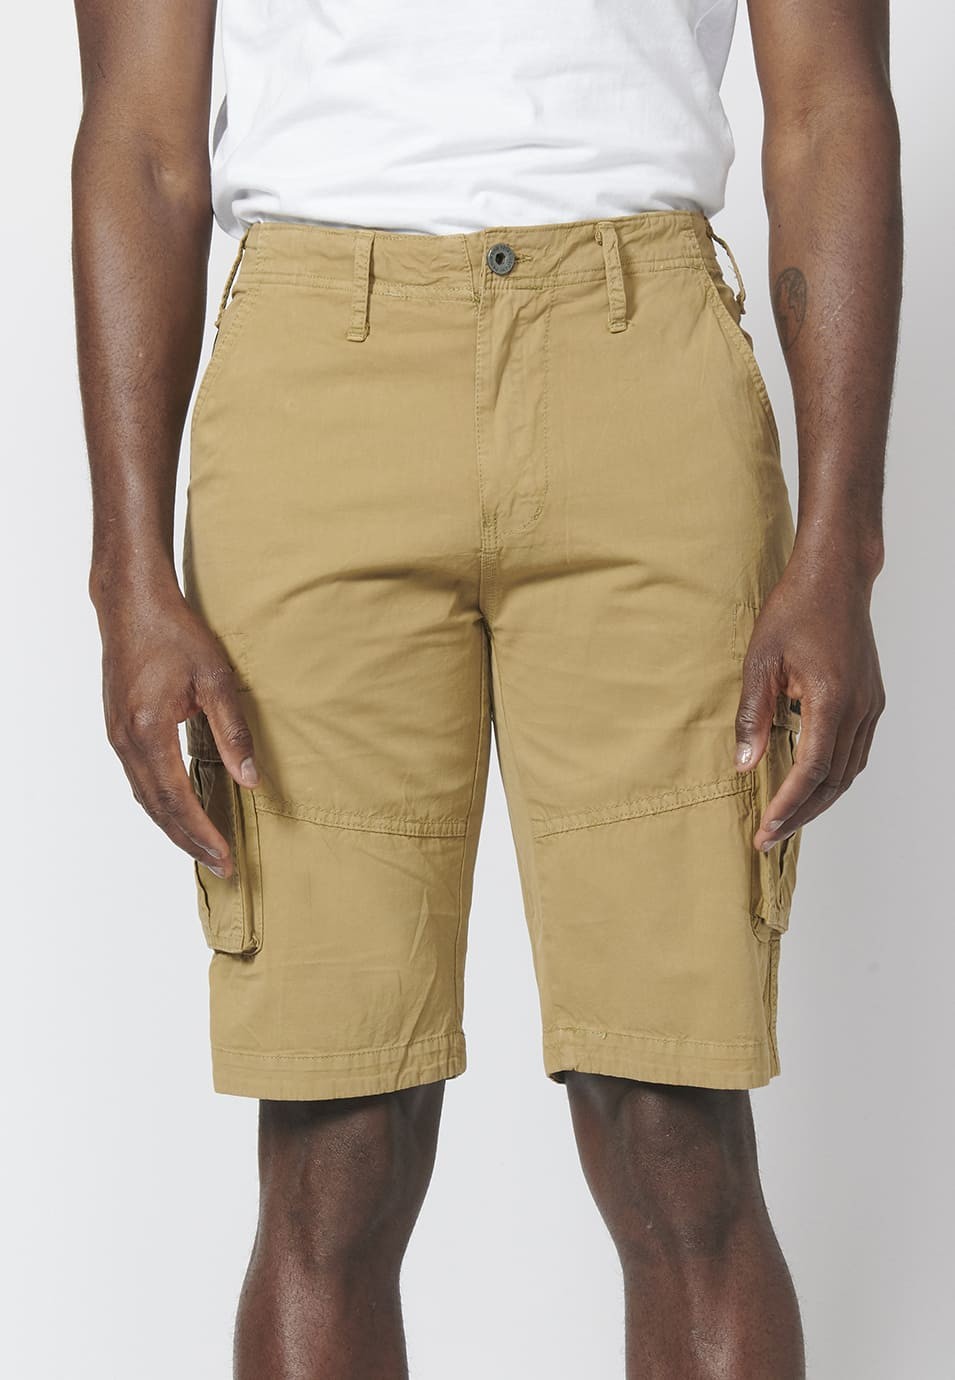 Bermuda pantalón corto estilo cargo para hombre con seis bolsillos